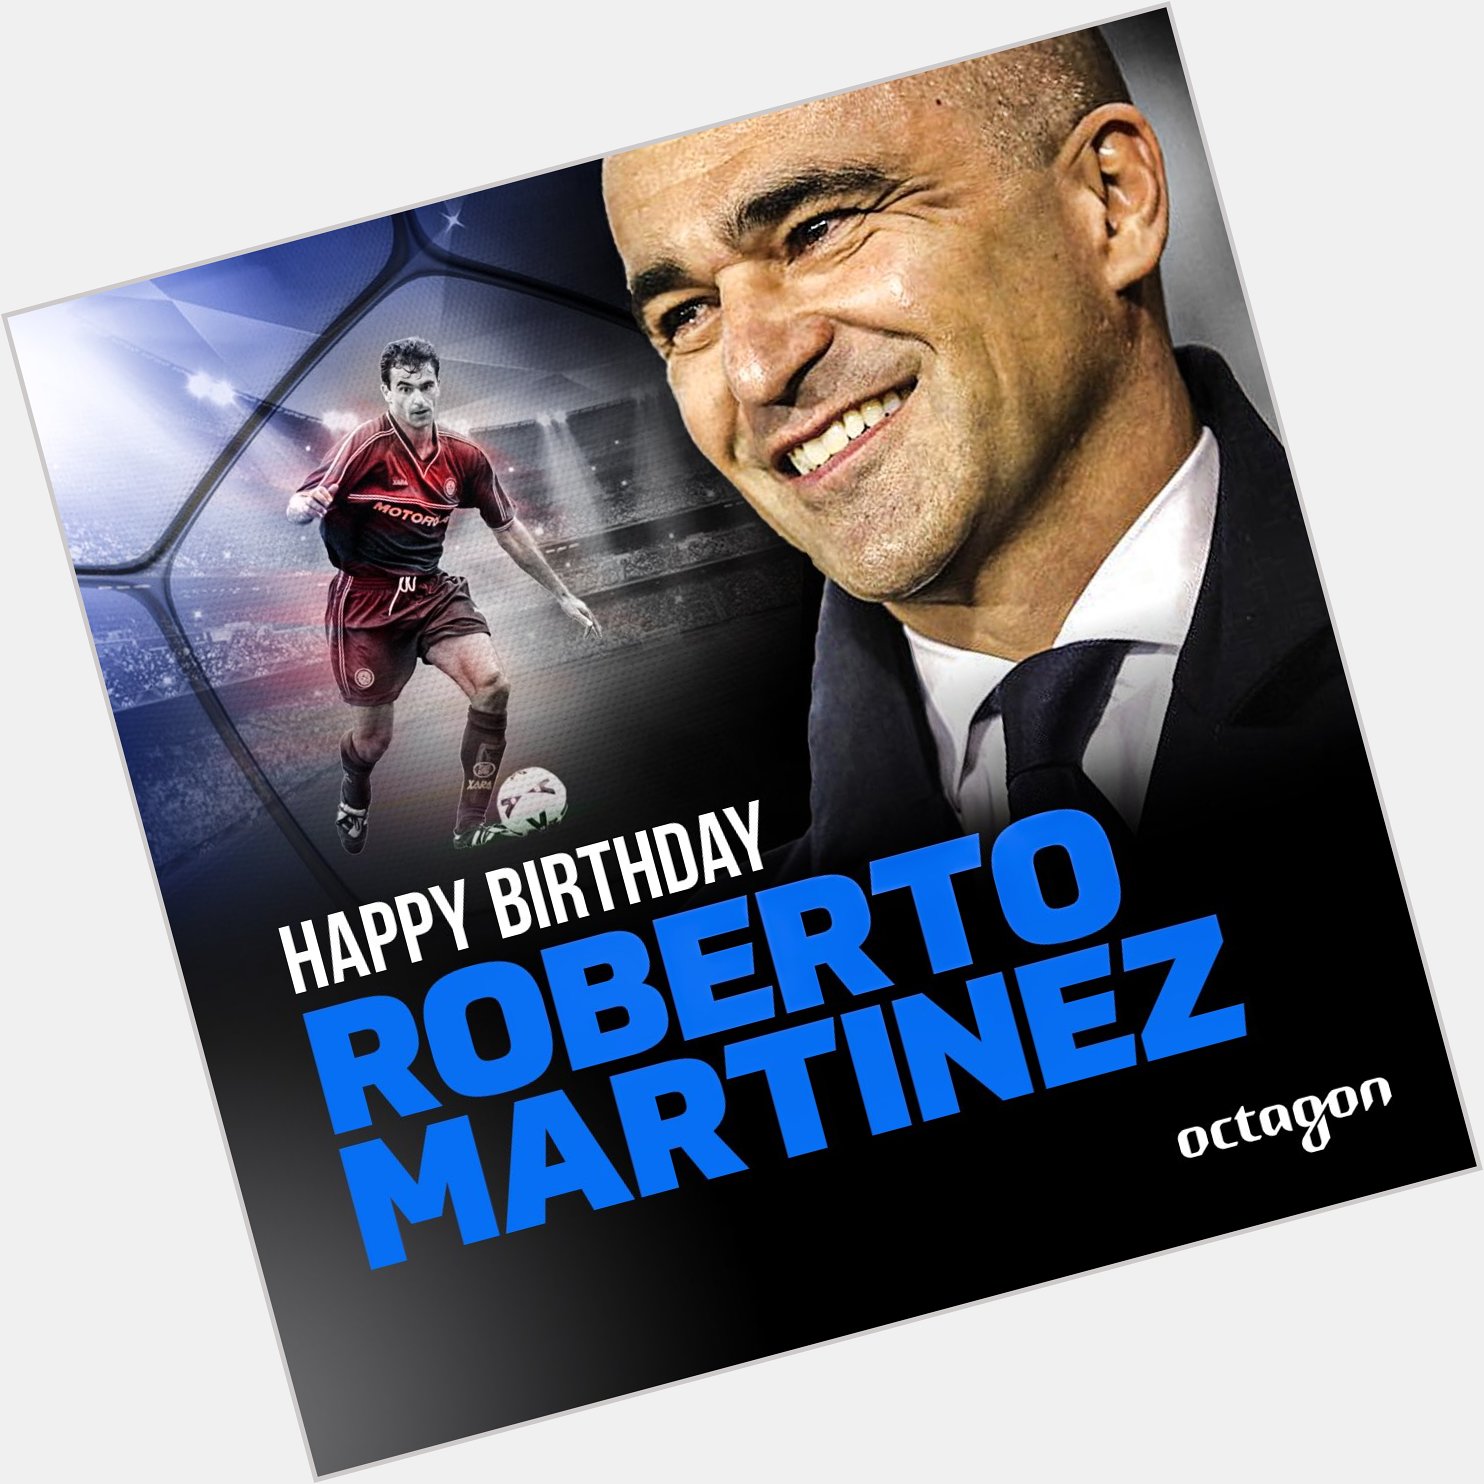 Happy birthday to client Roberto Martinez!! 